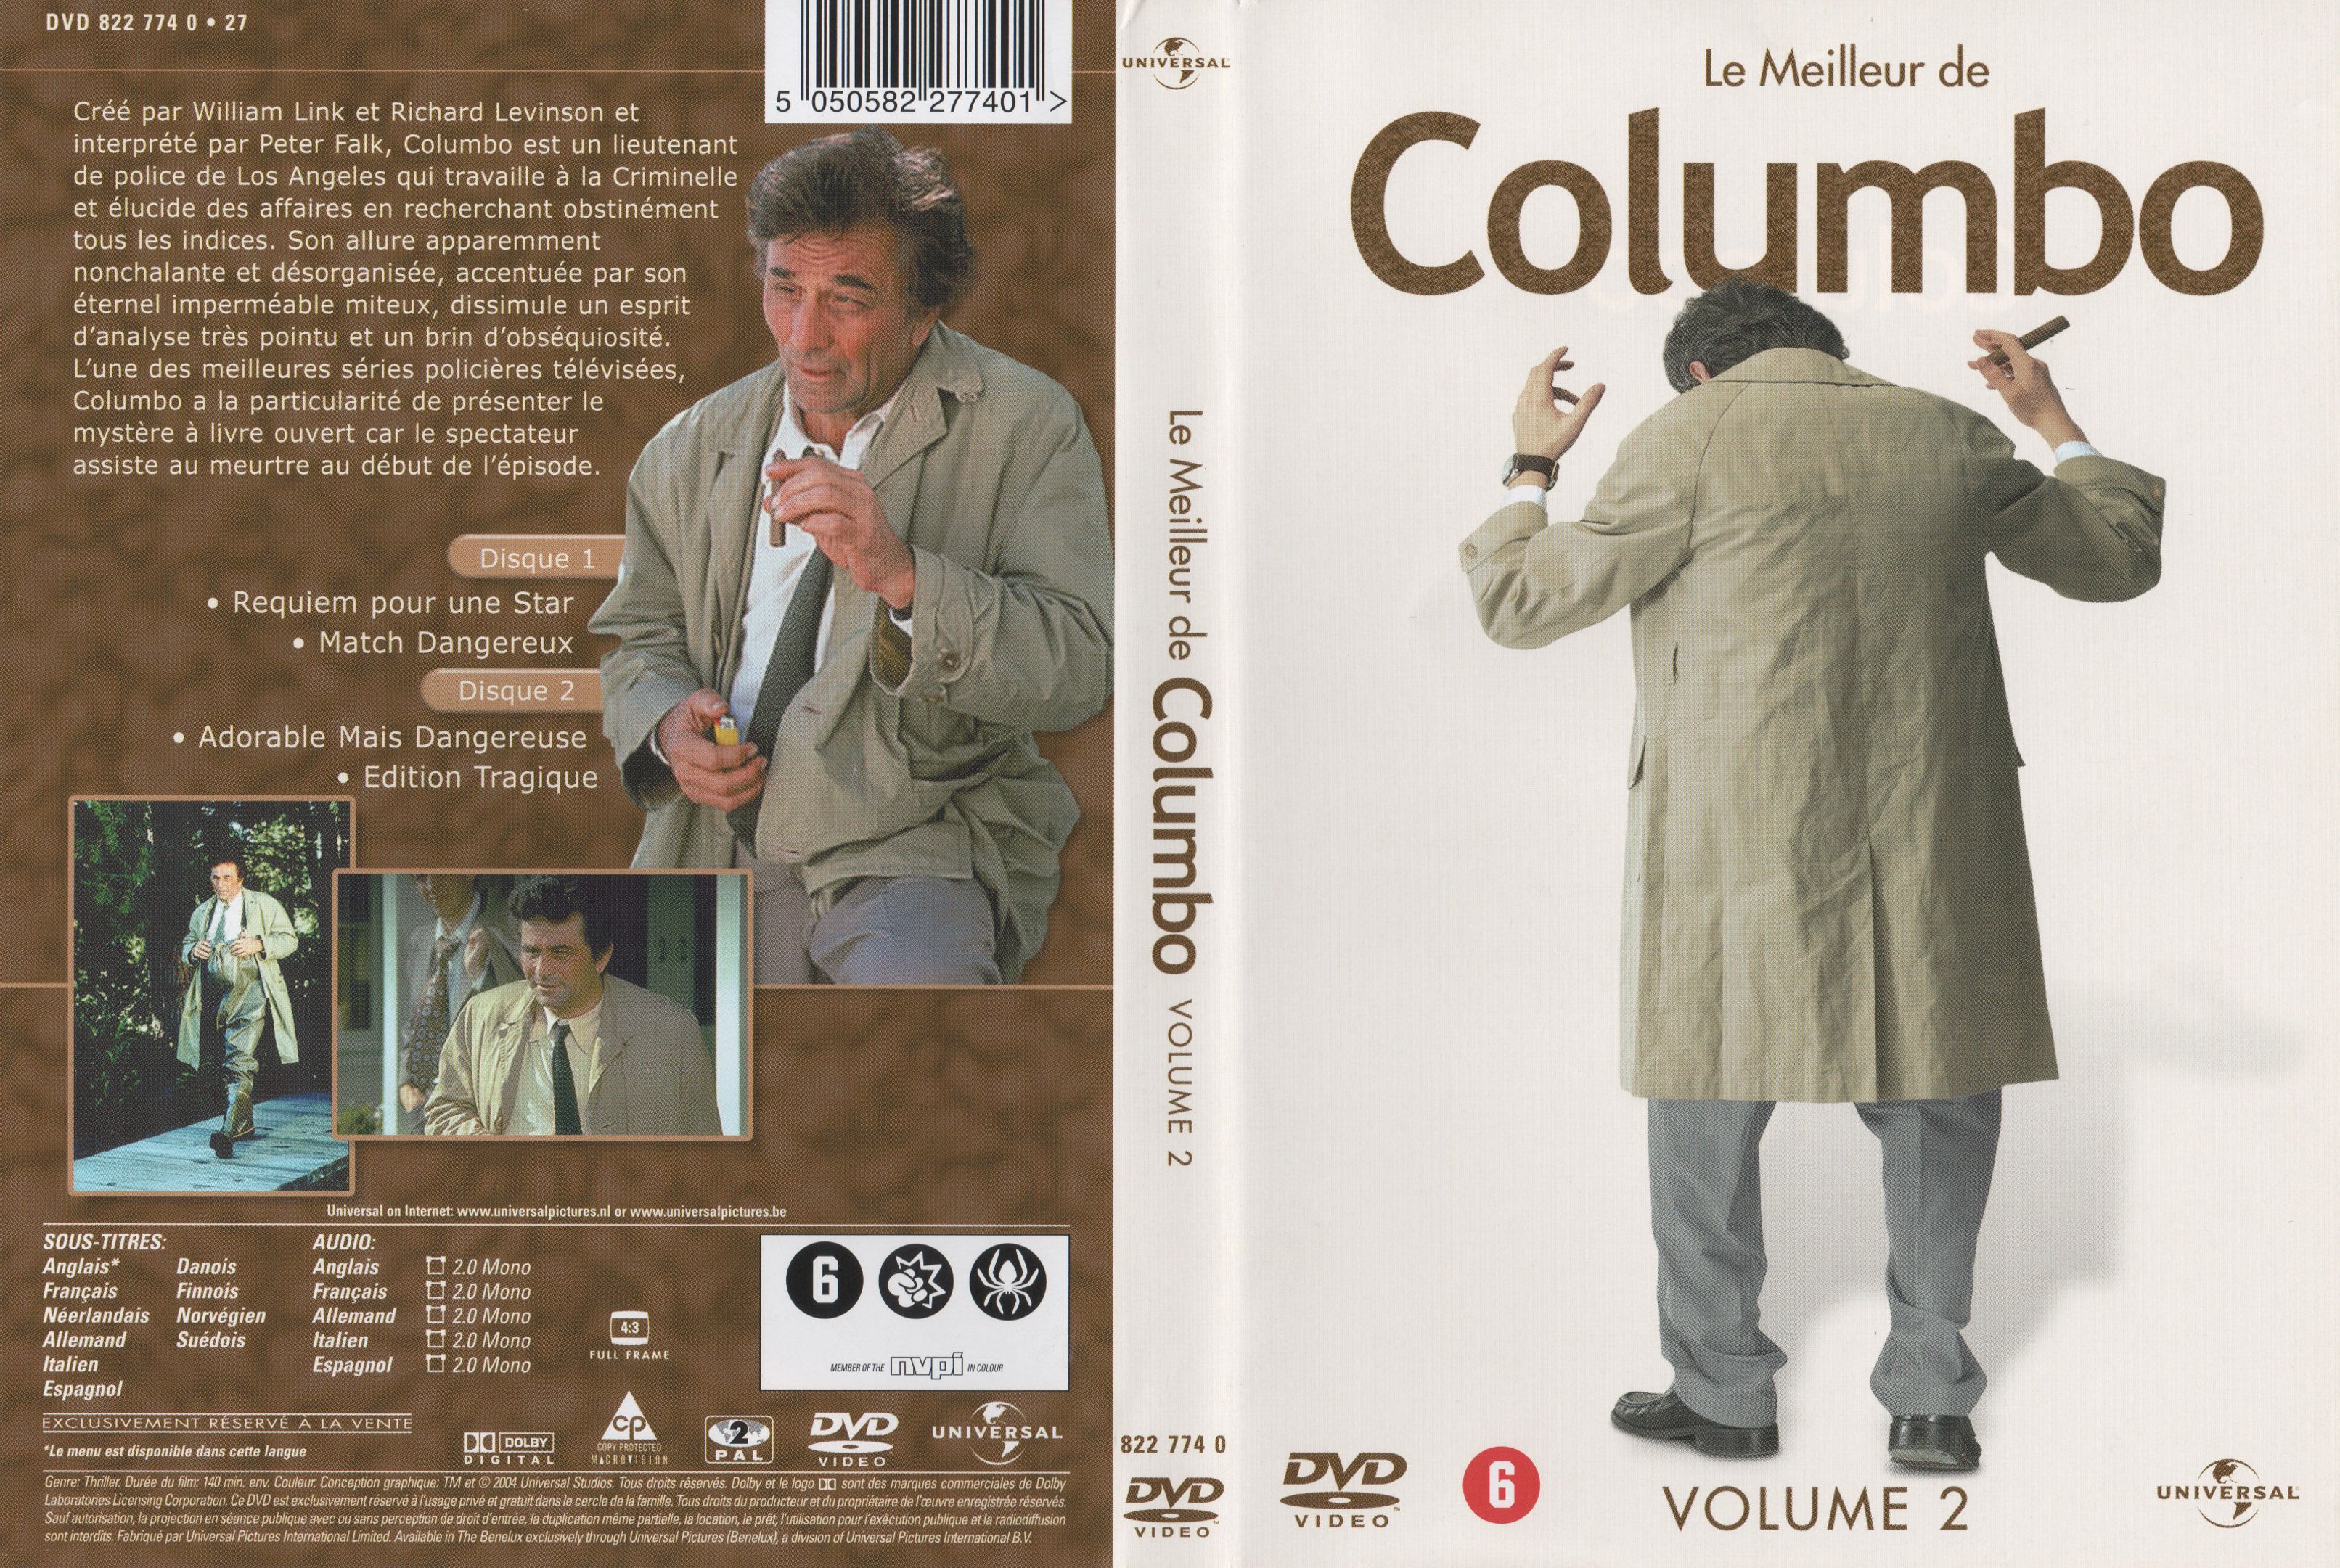 Jaquette DVD Le meilleur de Columbo vol 2